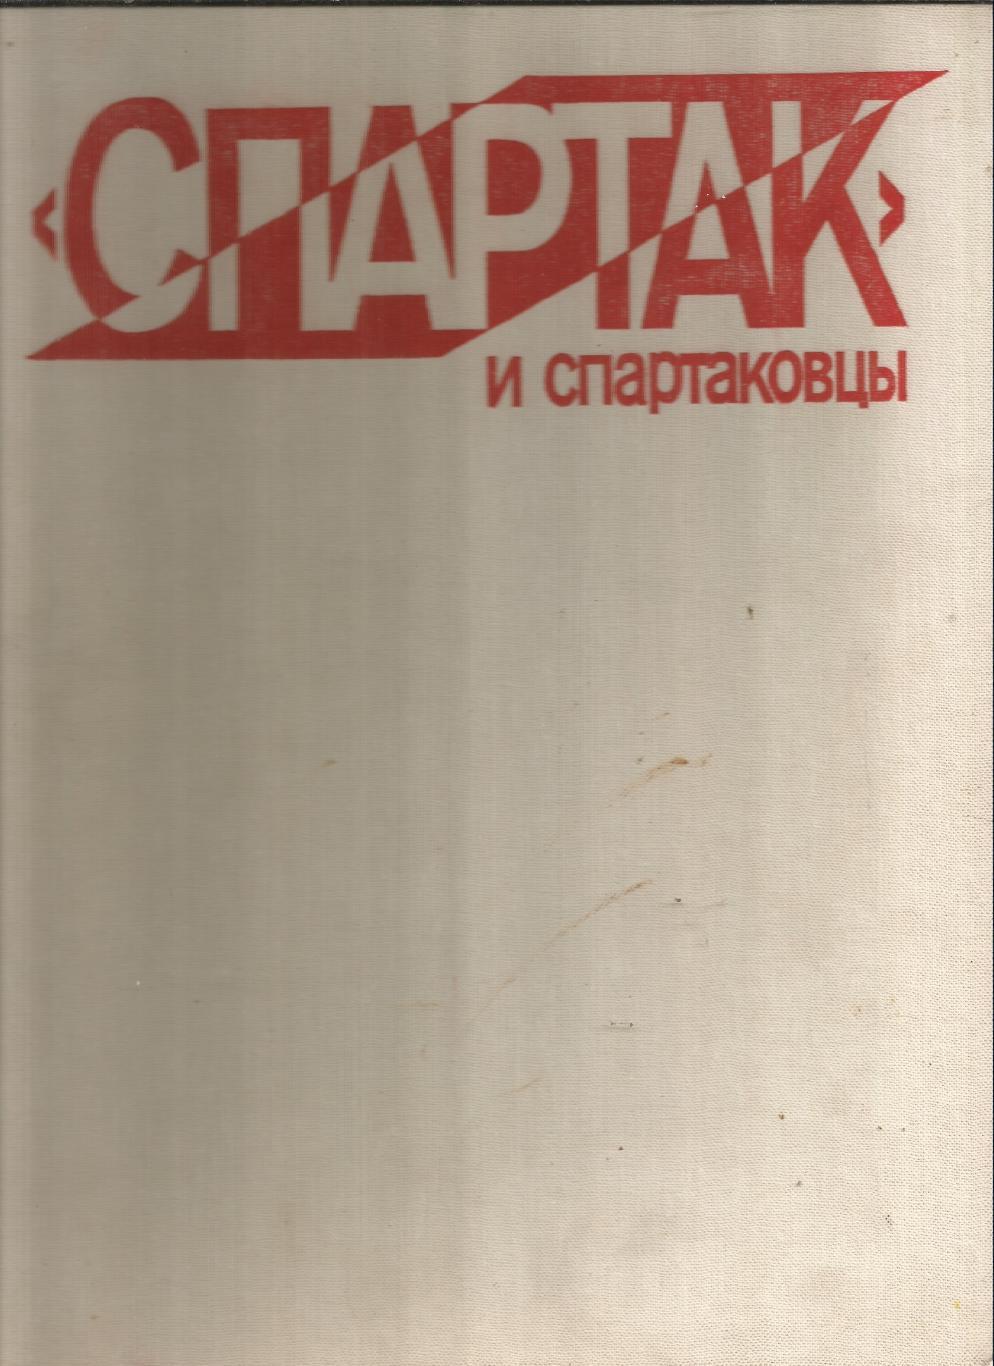 Спартак и спартаковцы 1985 год Издательство ФиС Альбомный формат 260 стр